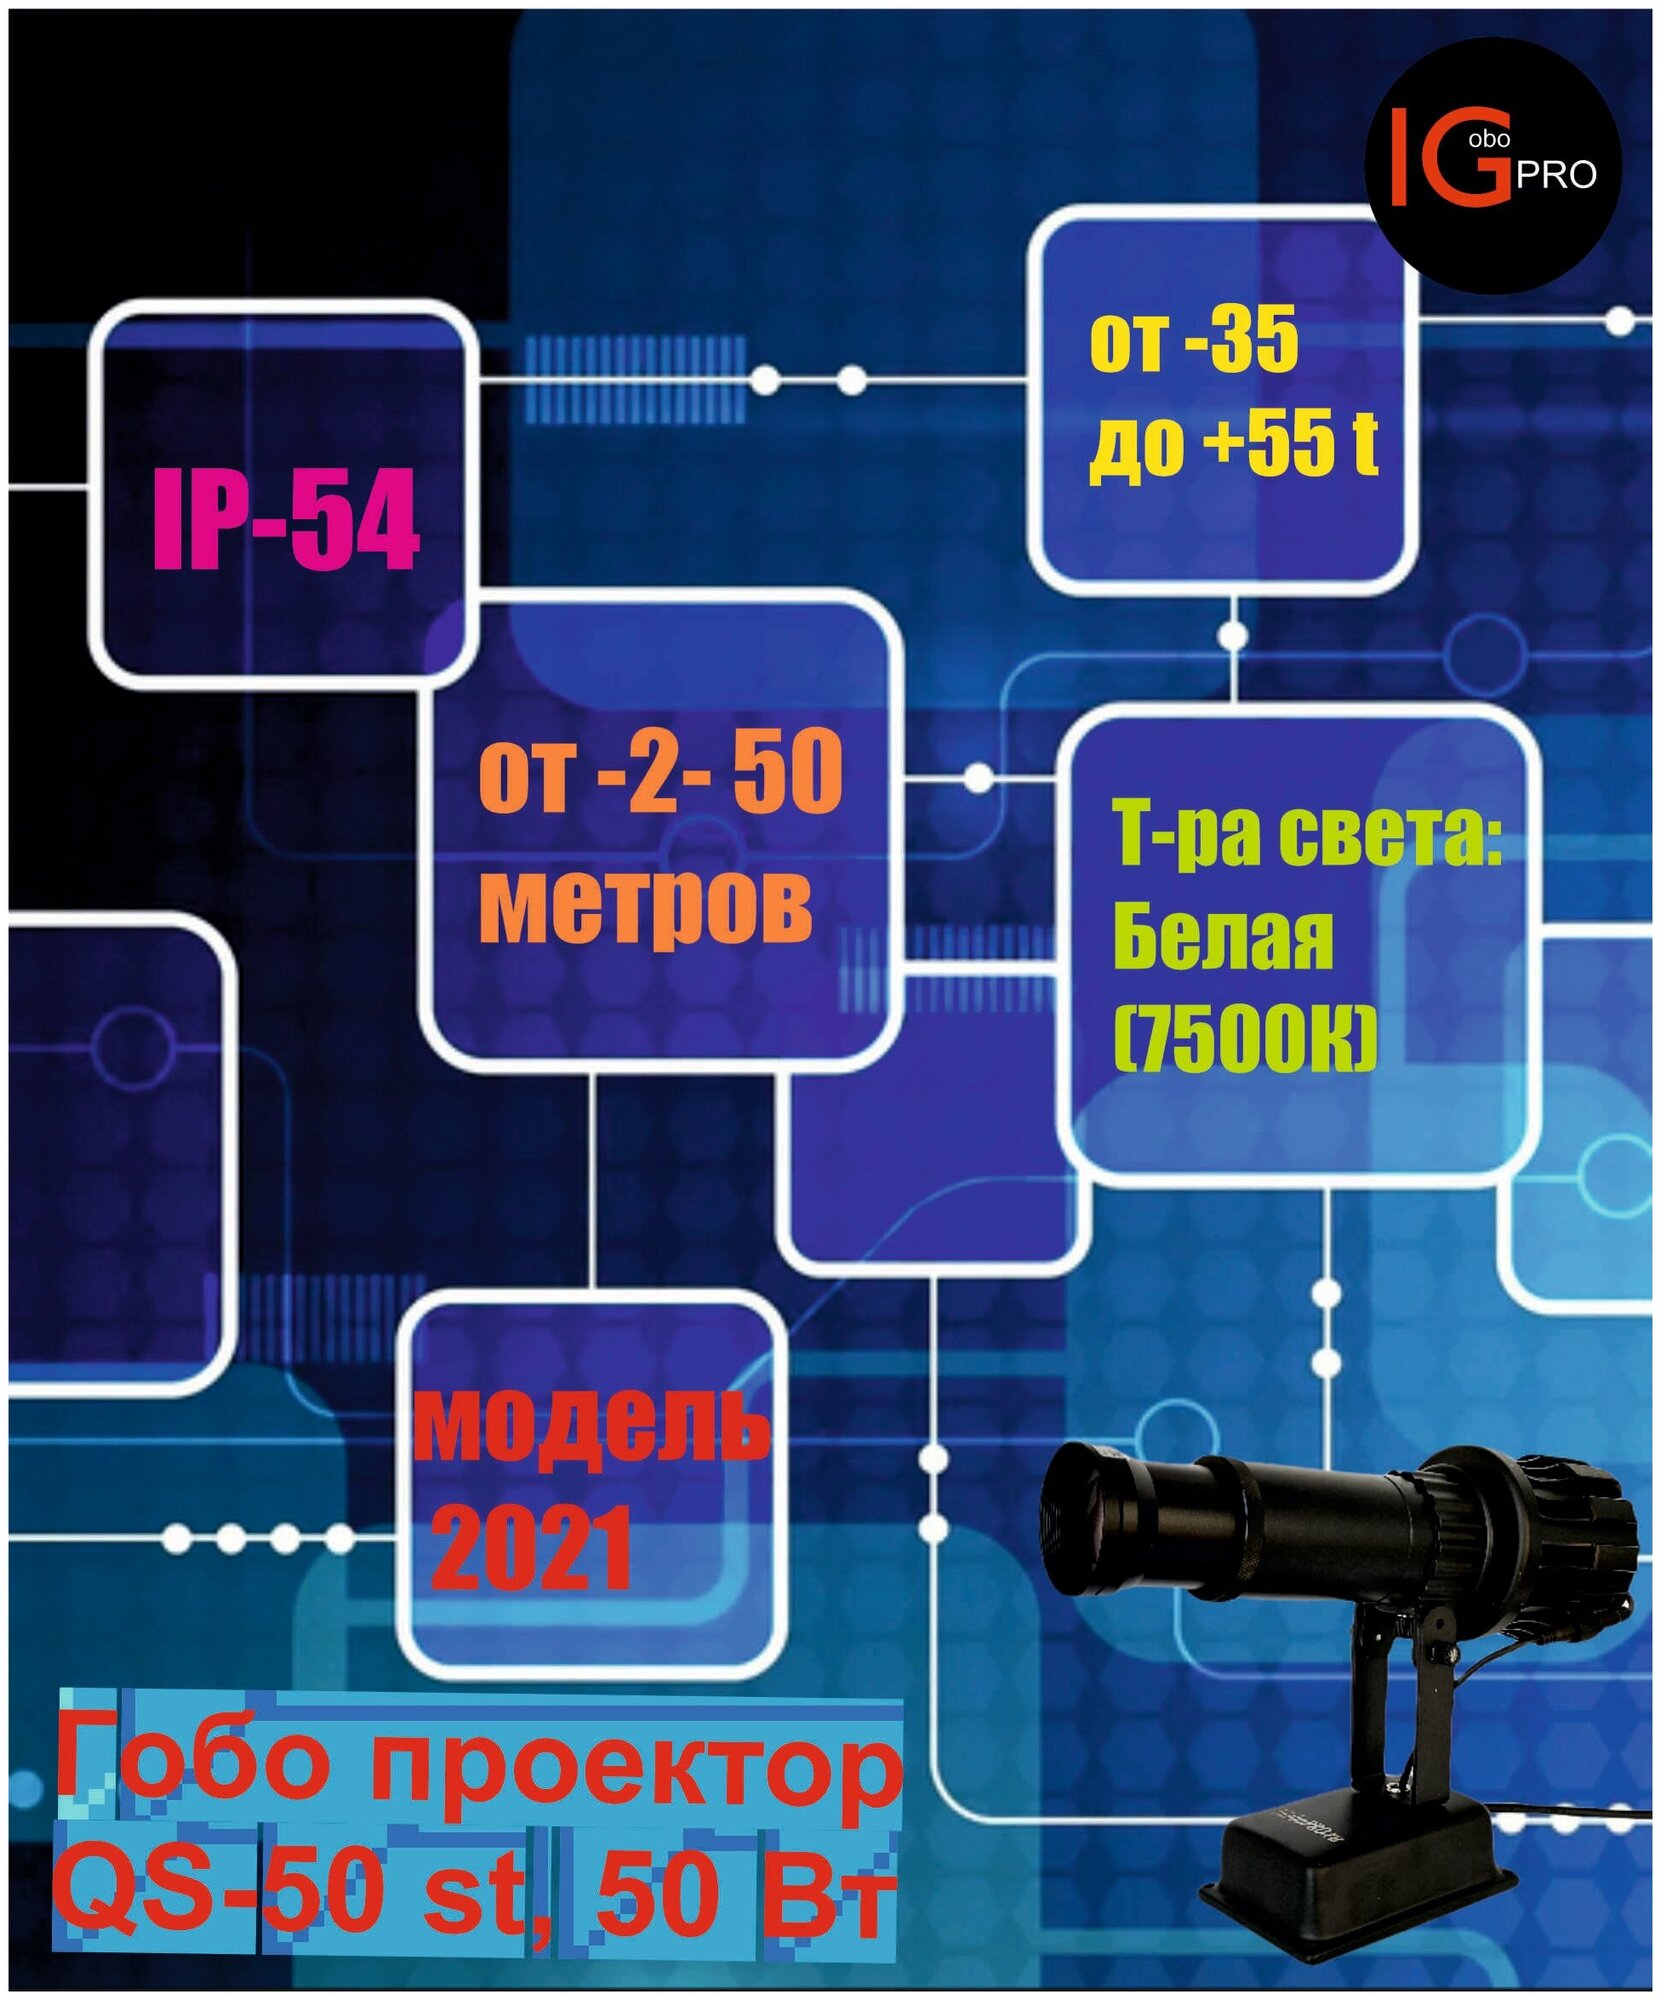 Гобо проектор LGP-35 для внутренней рекламы (с вращением)